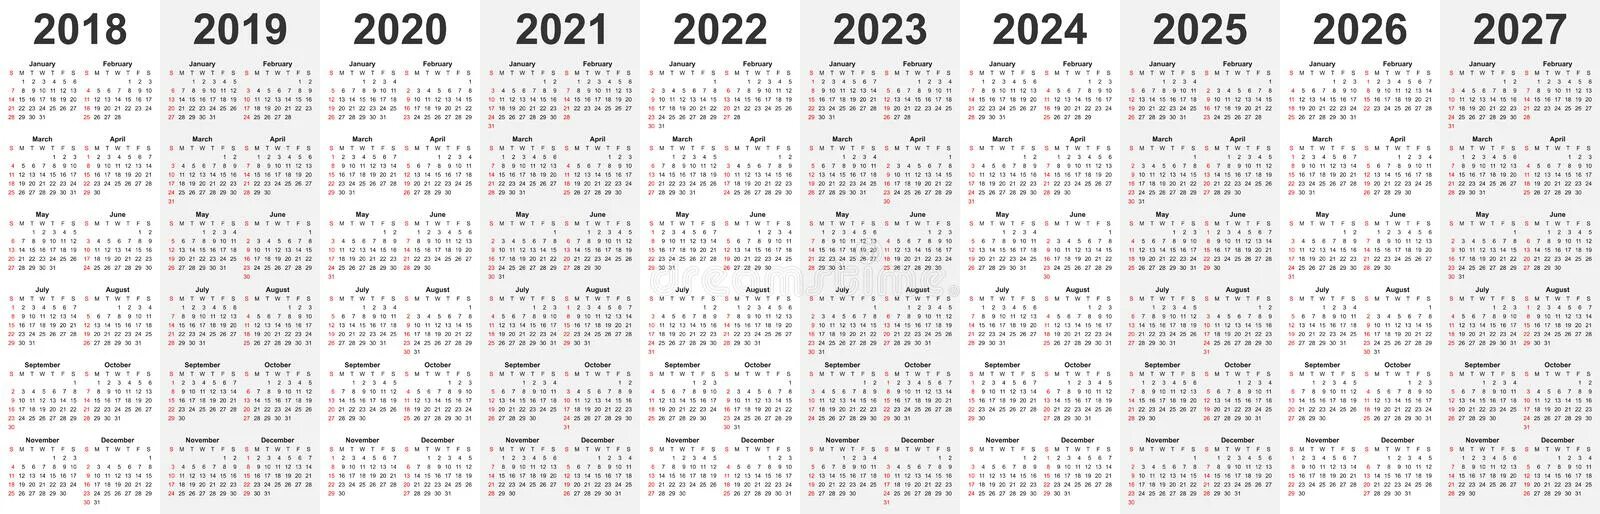 Сколько дней осталось до ноября 2024 года. Календарь 2019 2020 2021 2022 2023 2024. −2022) ( − 2022 ) + + (−2021) ( − 2021 ) + + (−2020) ( − 2020 ) + + ...+ + 2023 2023 + + 2024 2024 .. 2020 2021 2022 2023 2024 2025. Календарь 2021-2025.